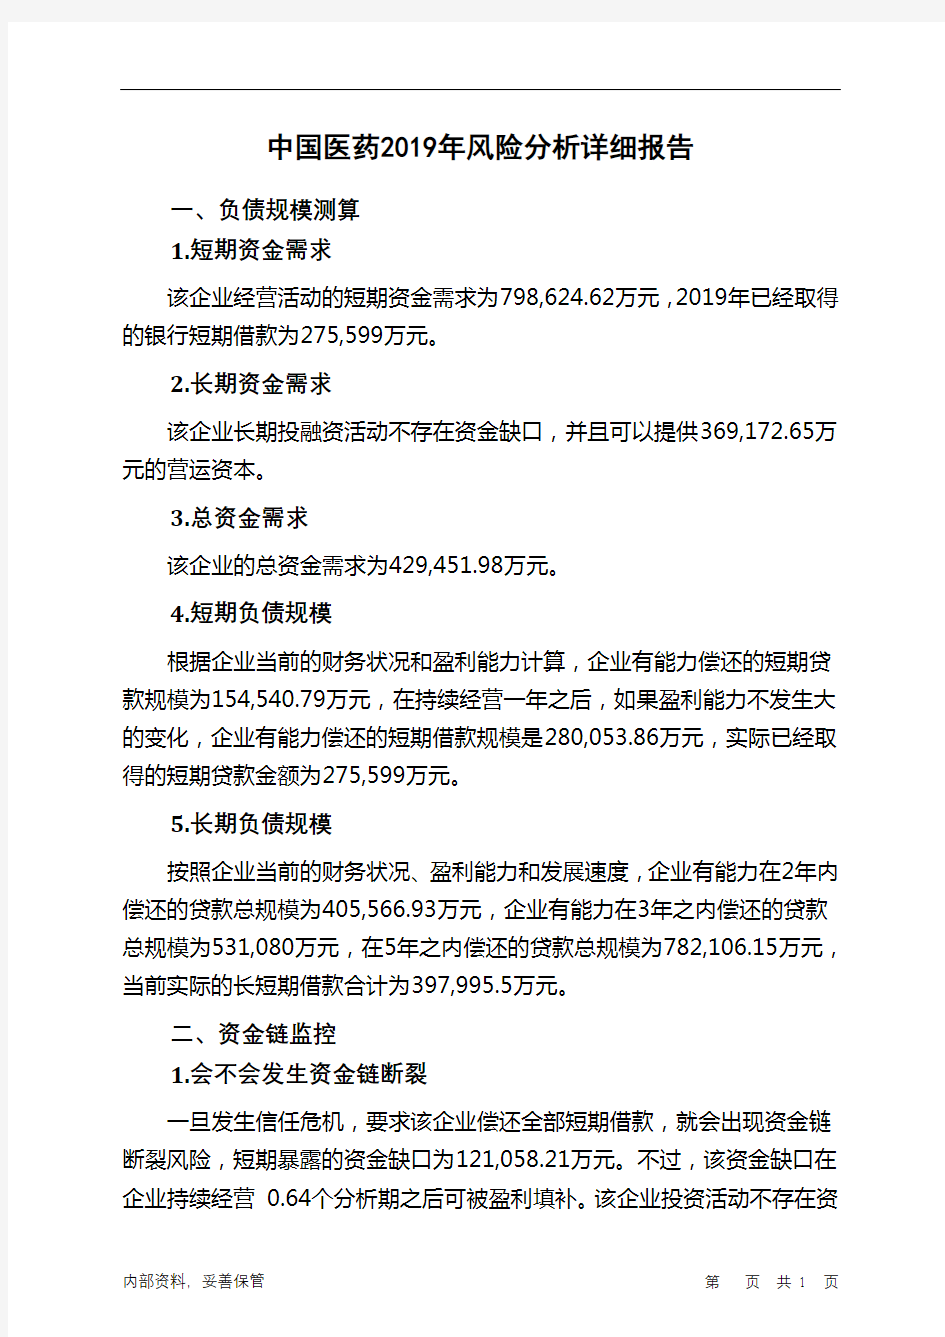 中国医药2019年财务风险分析详细报告